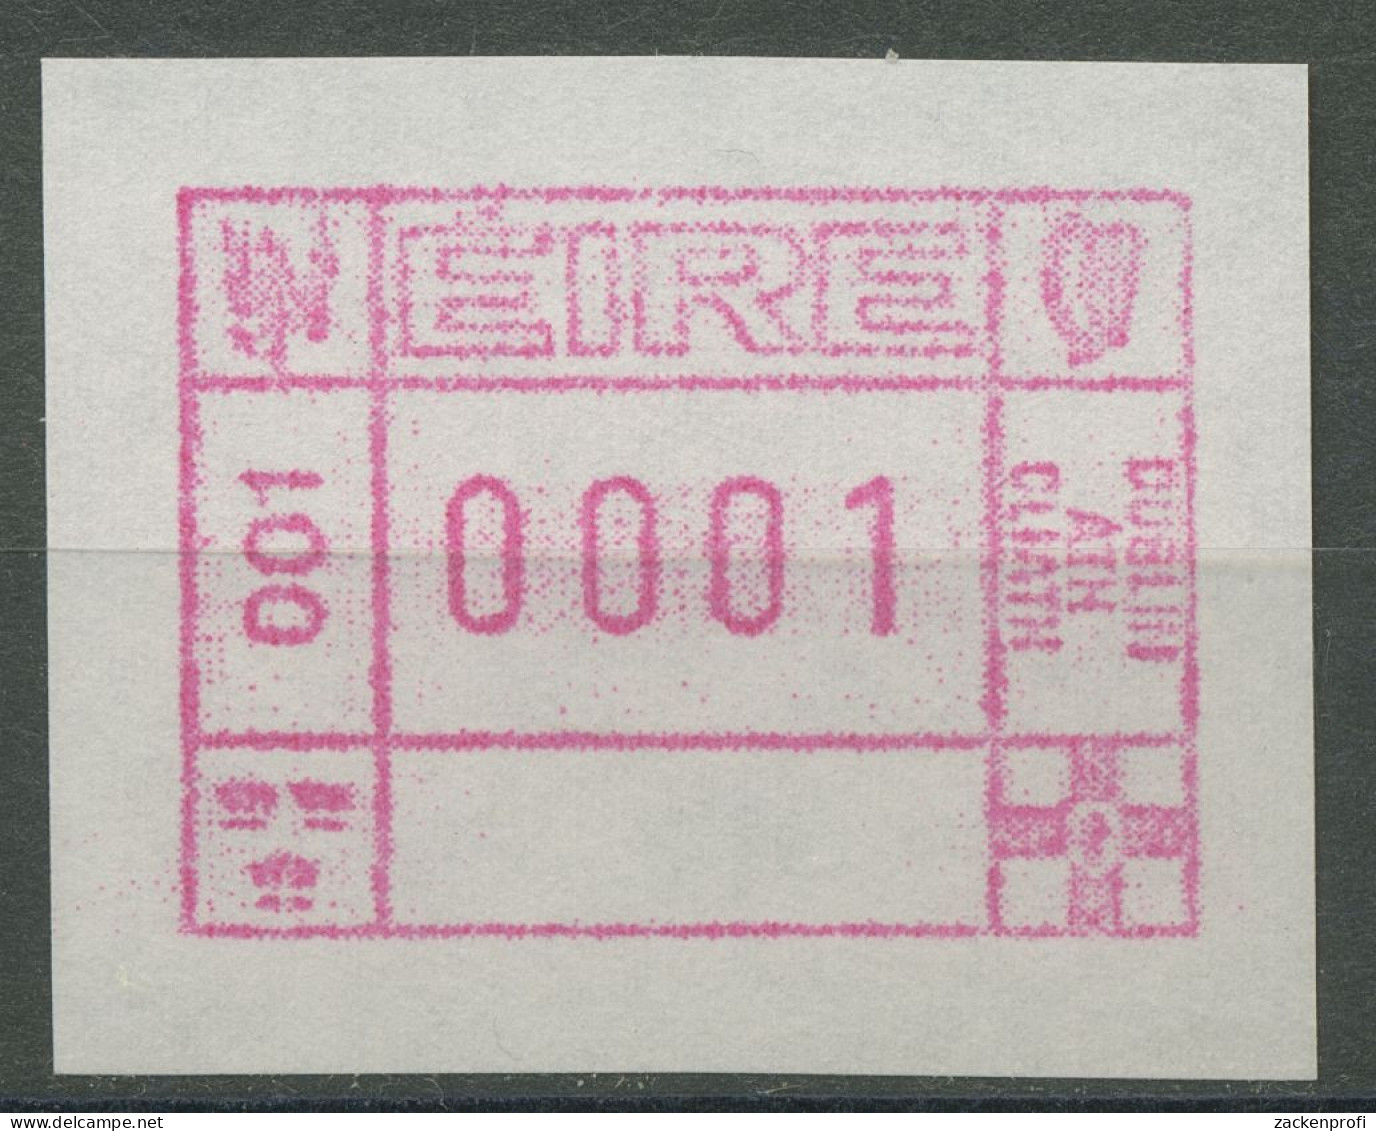 Irland Automatenmarken 1990 Freimarke Einzelwert ATM 1 Postfrisch - Viñetas De Franqueo (Frama)